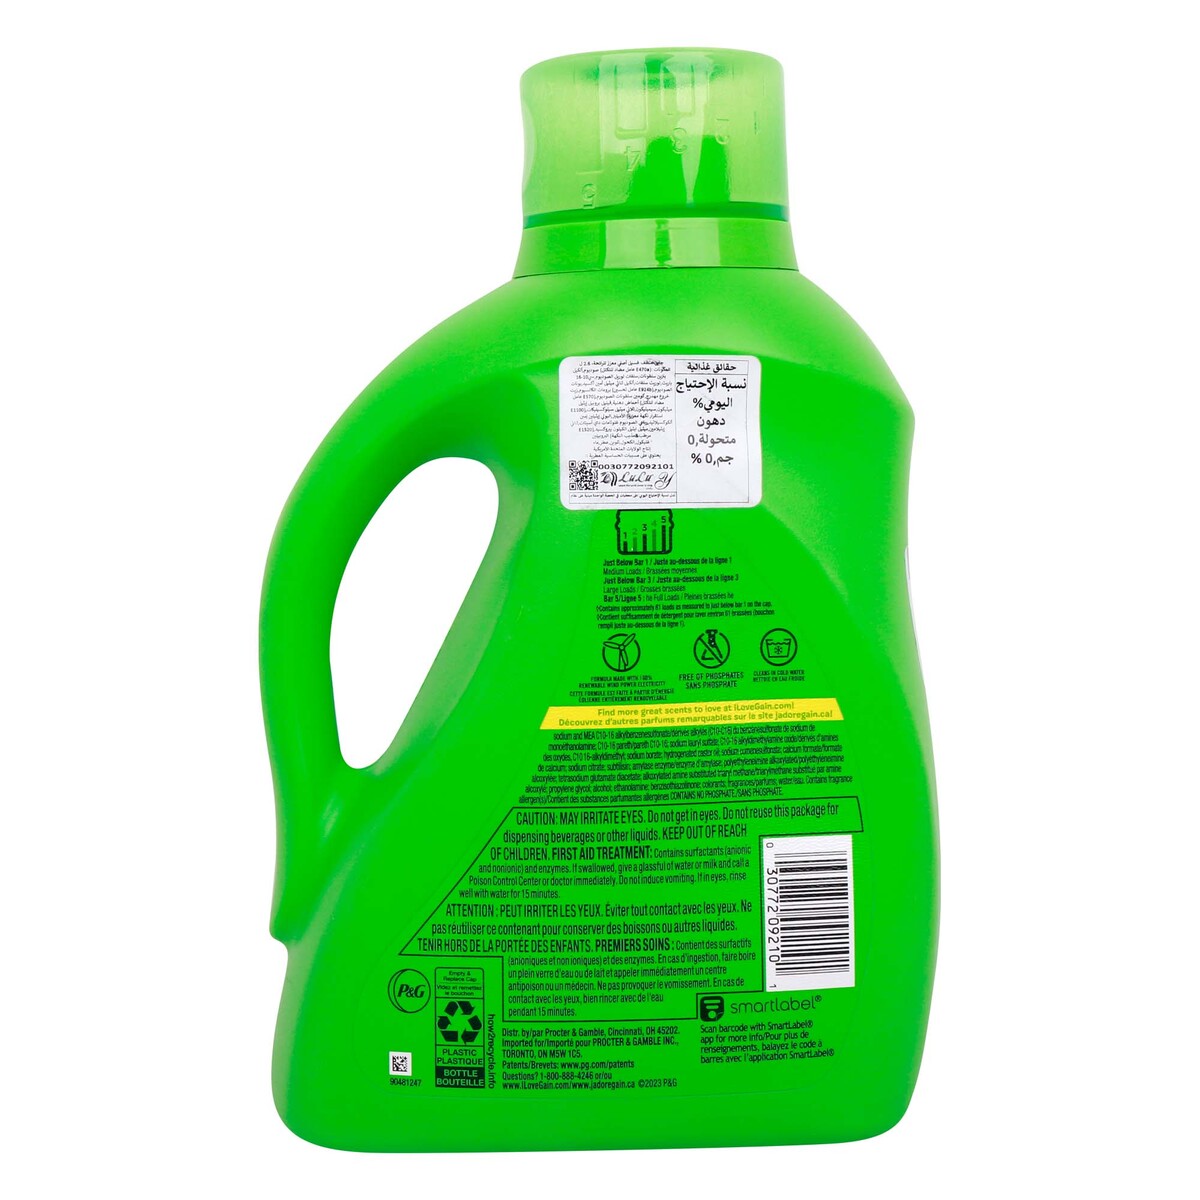 Gain Original Aroma Boost Liquid Detergent 2.6 Litres